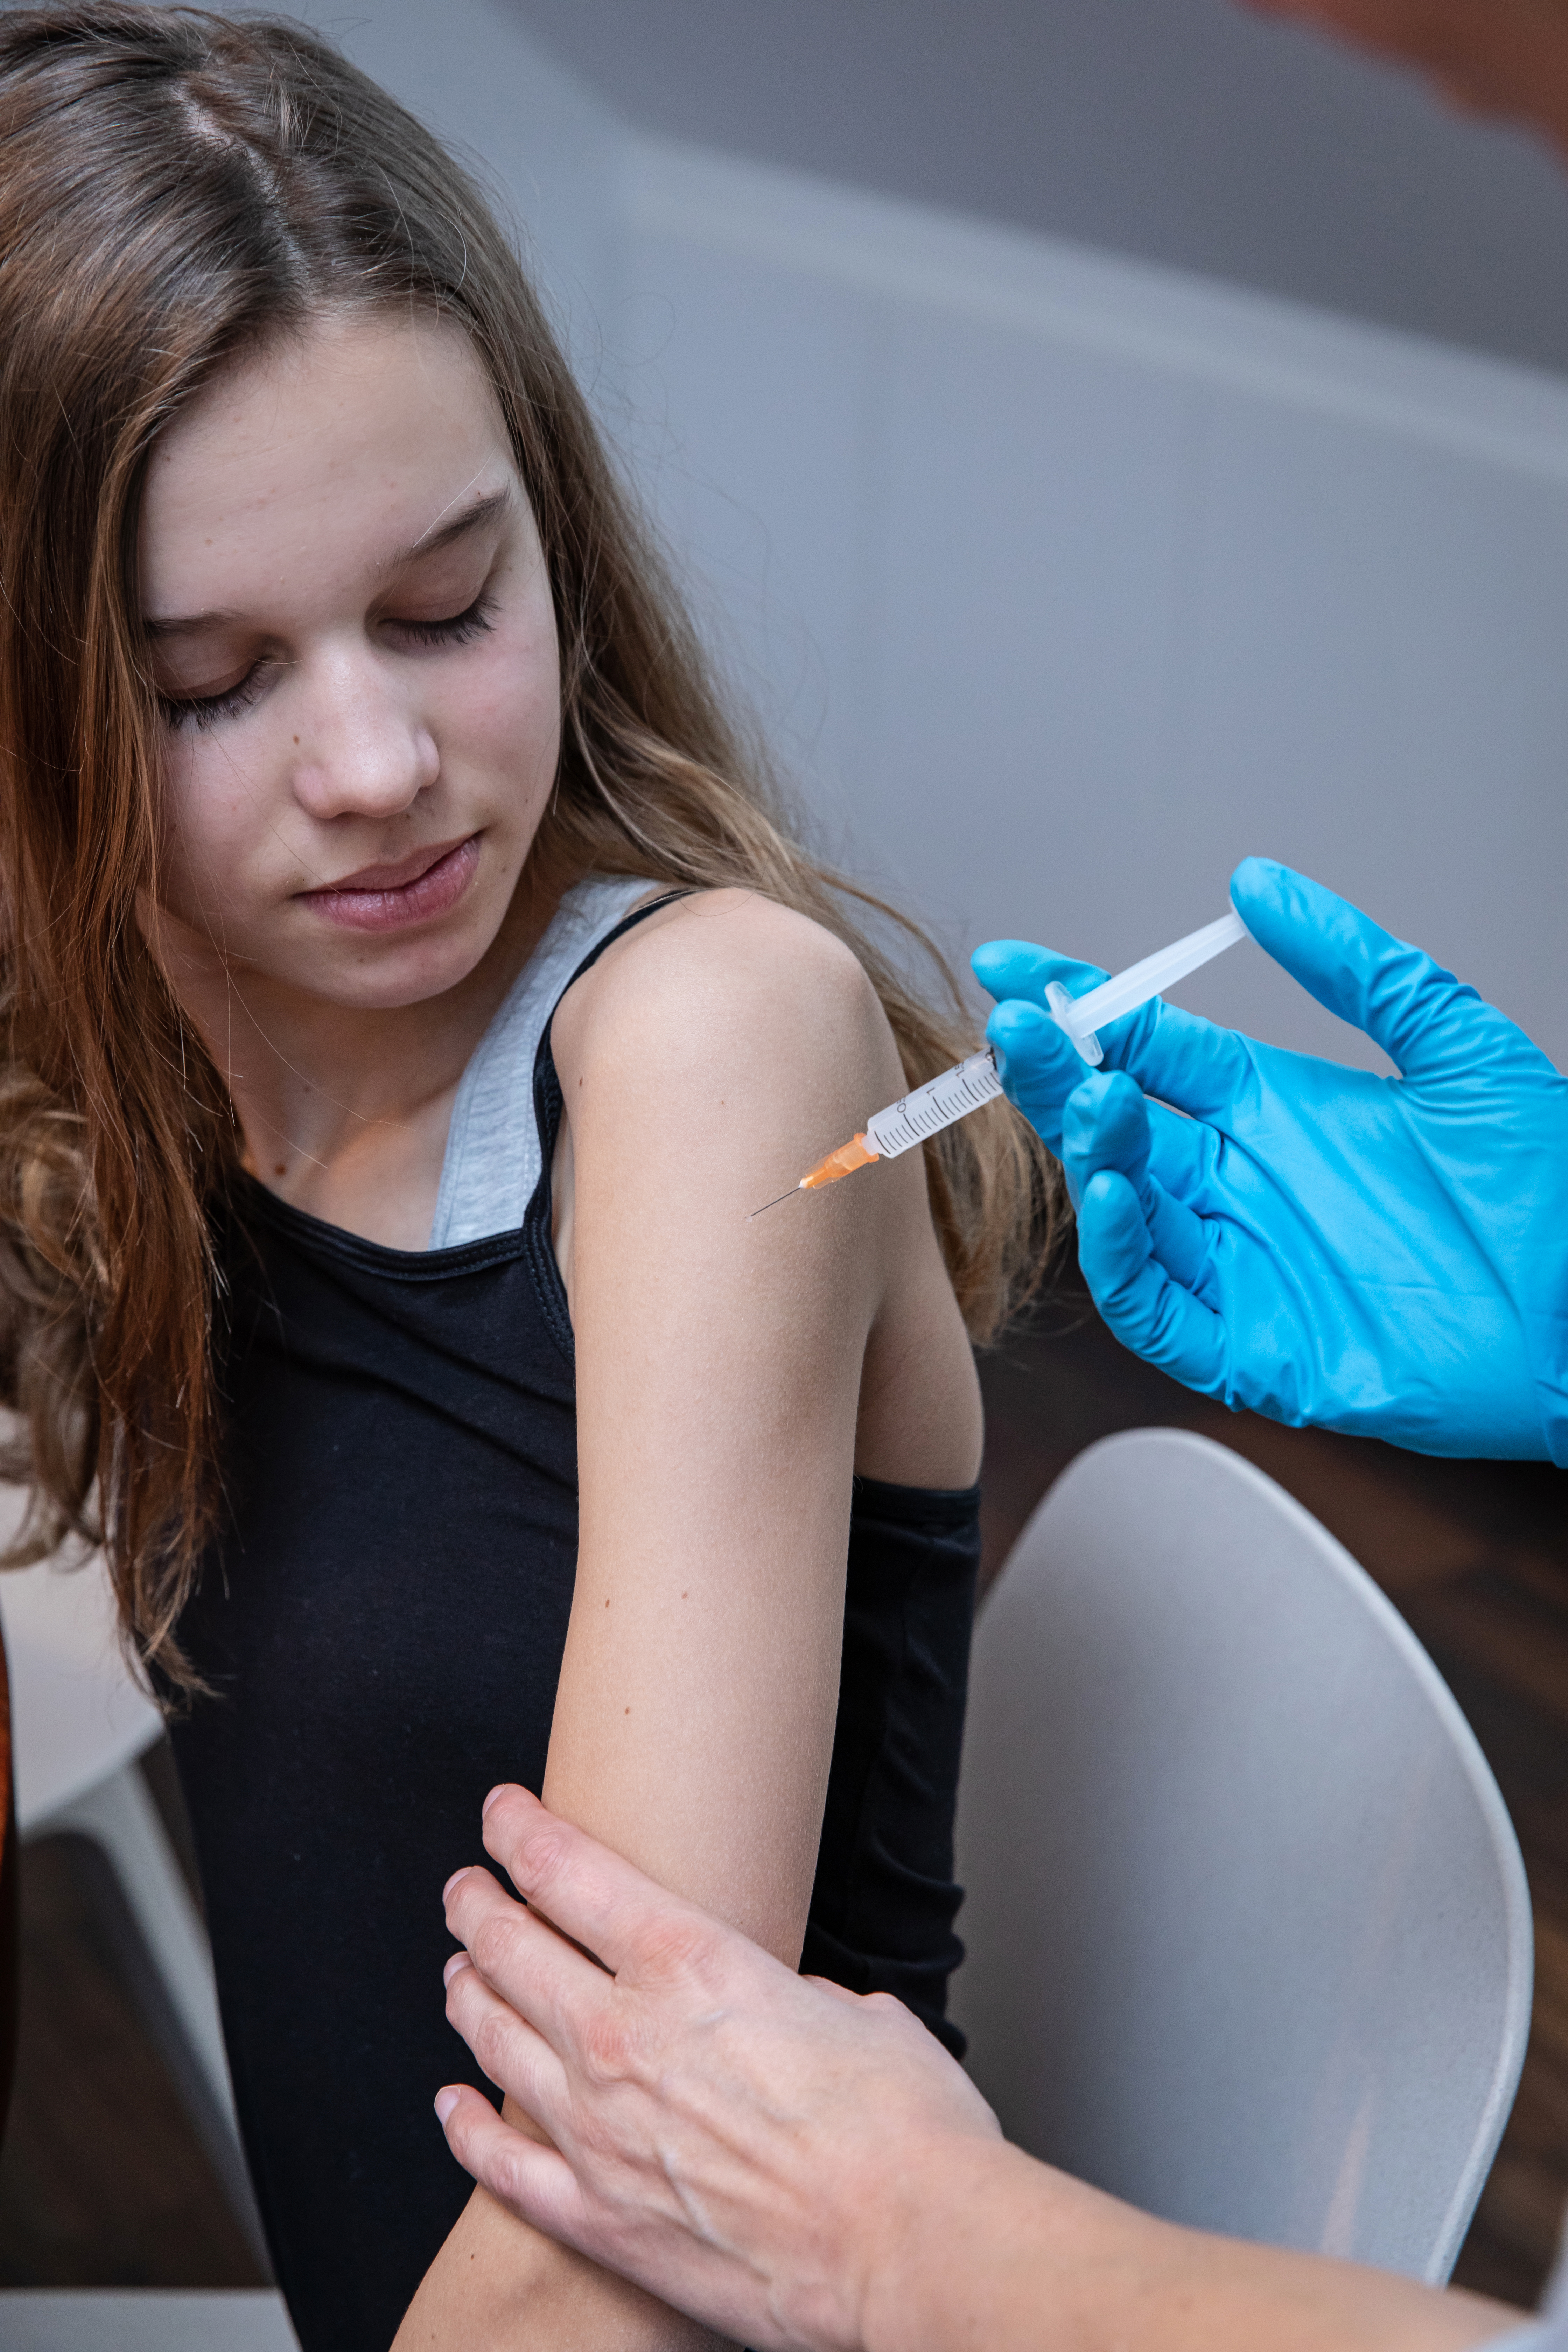 Meisje laat zich vaccineren tegen HPV